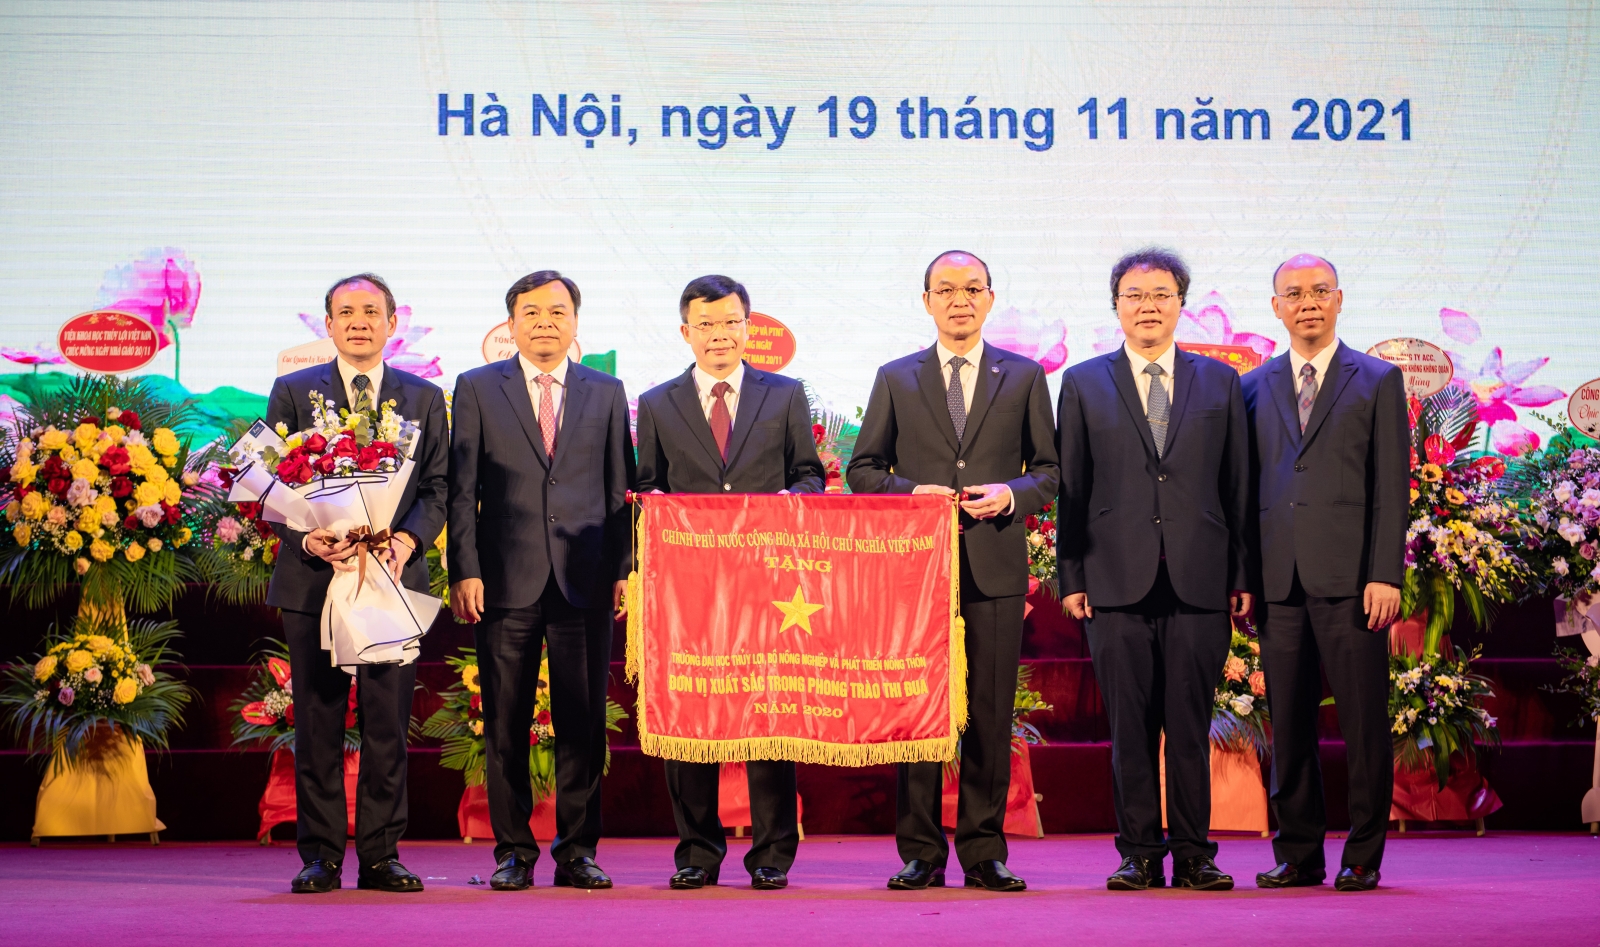 Trường Đại học Thủy lợi kỷ niệm ngày Nhà giáo Việt Nam 20/11 và đón nhận sao UPM